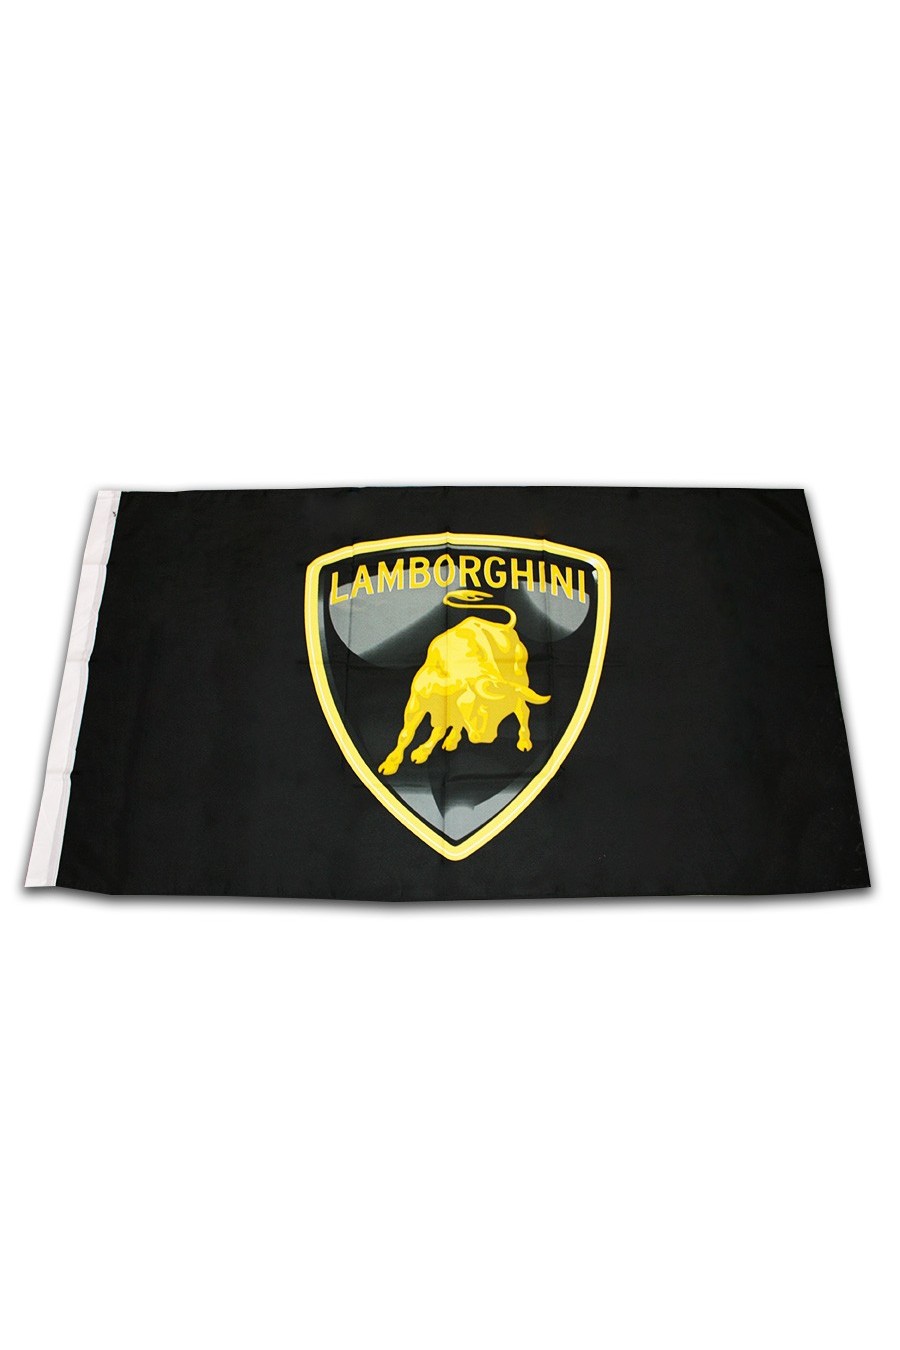 bandiera lamborghina